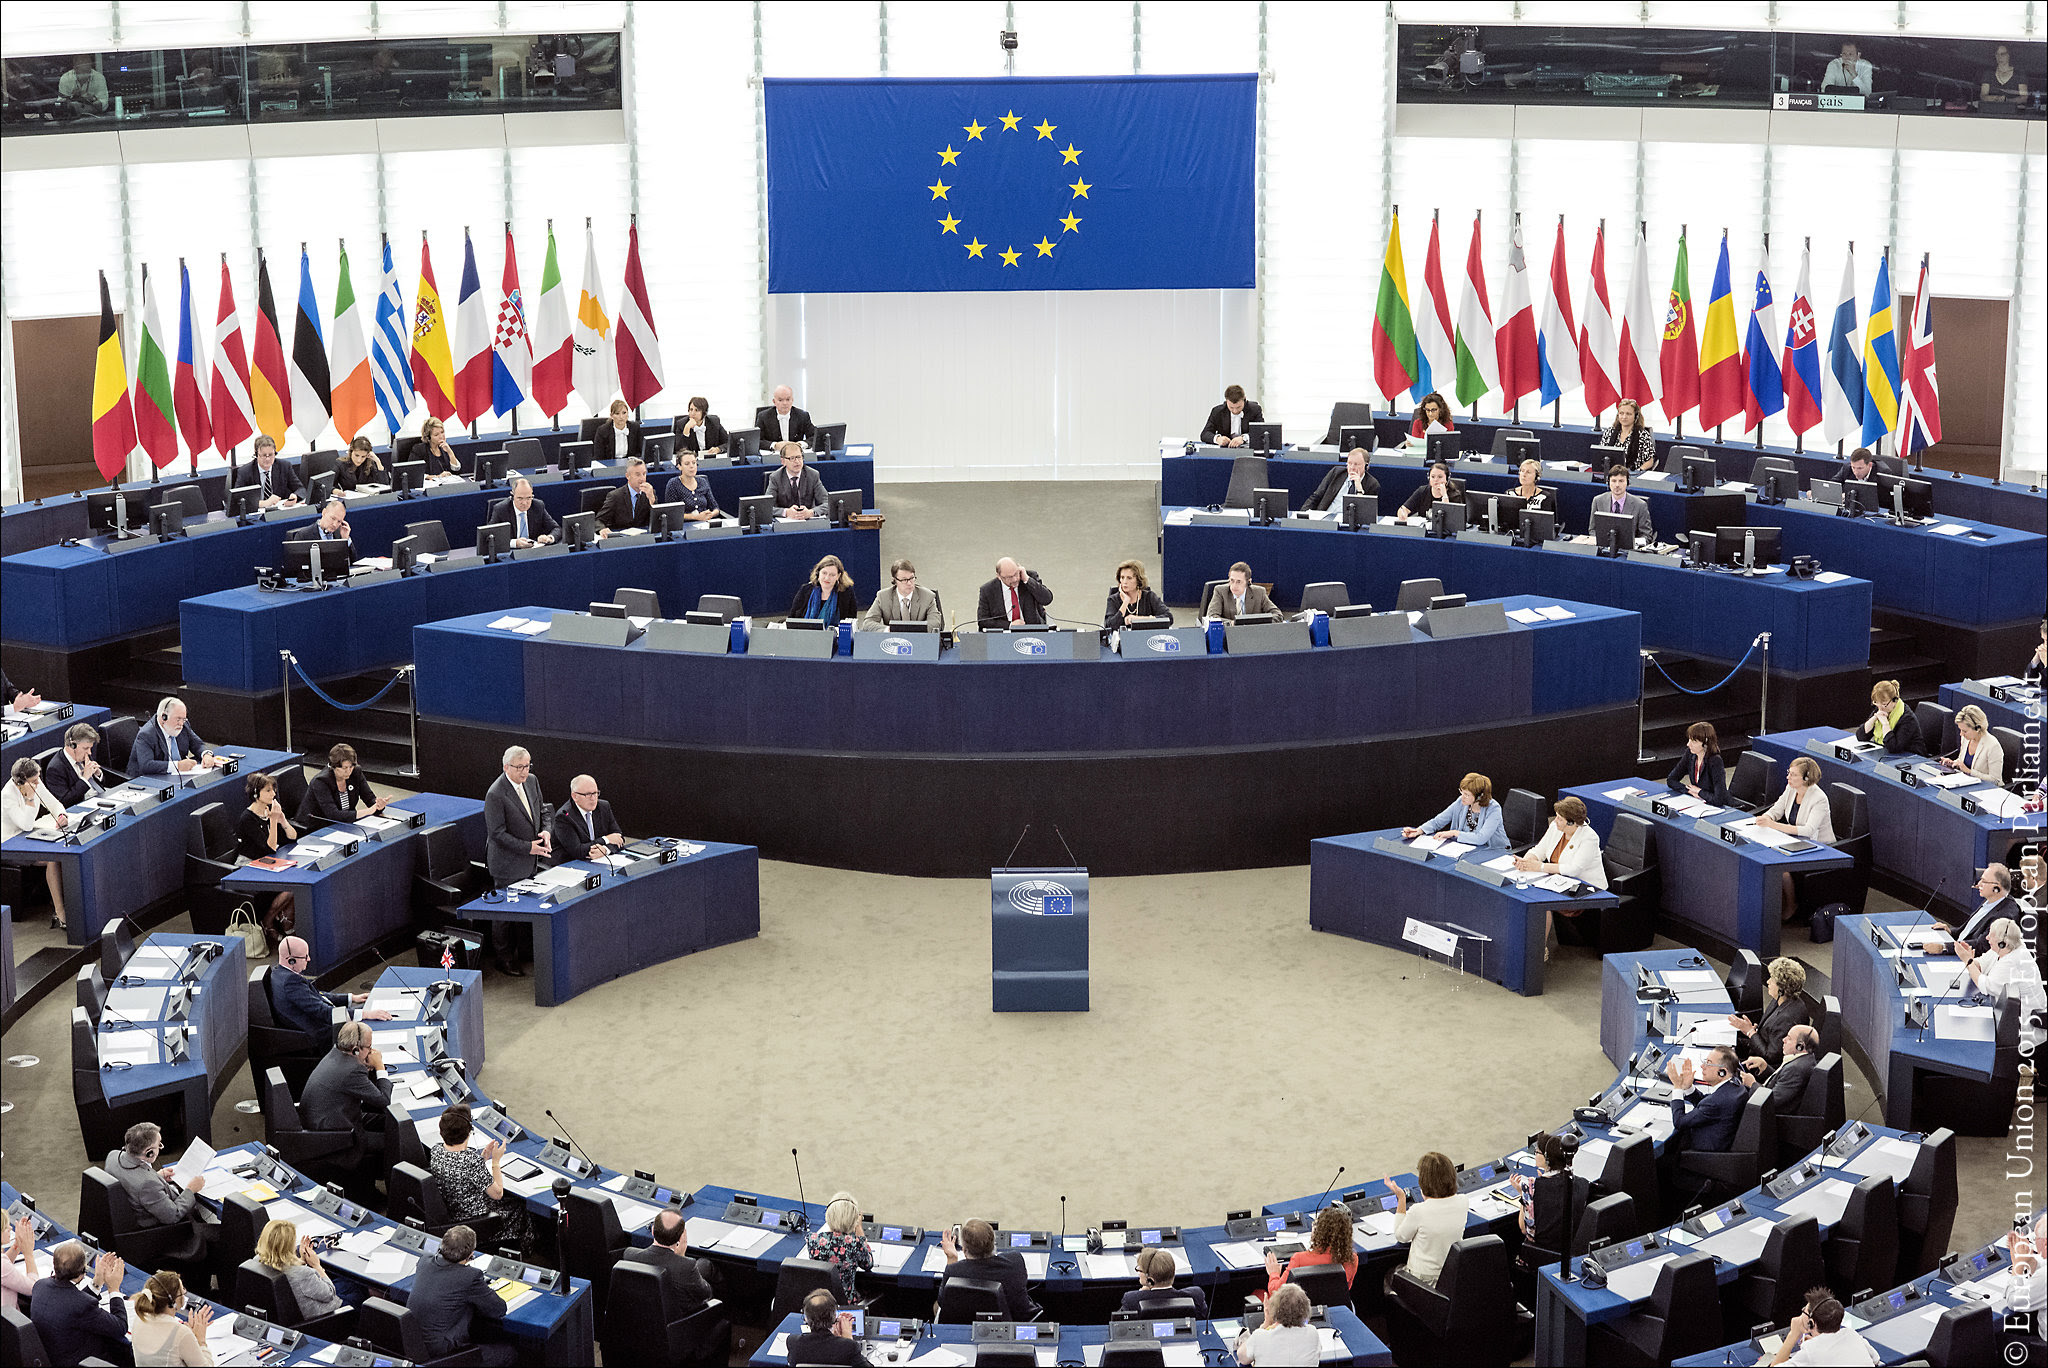 Οι ευρωβουλευτές του ΣΥΡΙΖΑ, της ΝΔ και του Ποταμιού ψήφισαν κατά της διακοπής των διαπραγματεύσεων ΕΕ-Τουρκίας